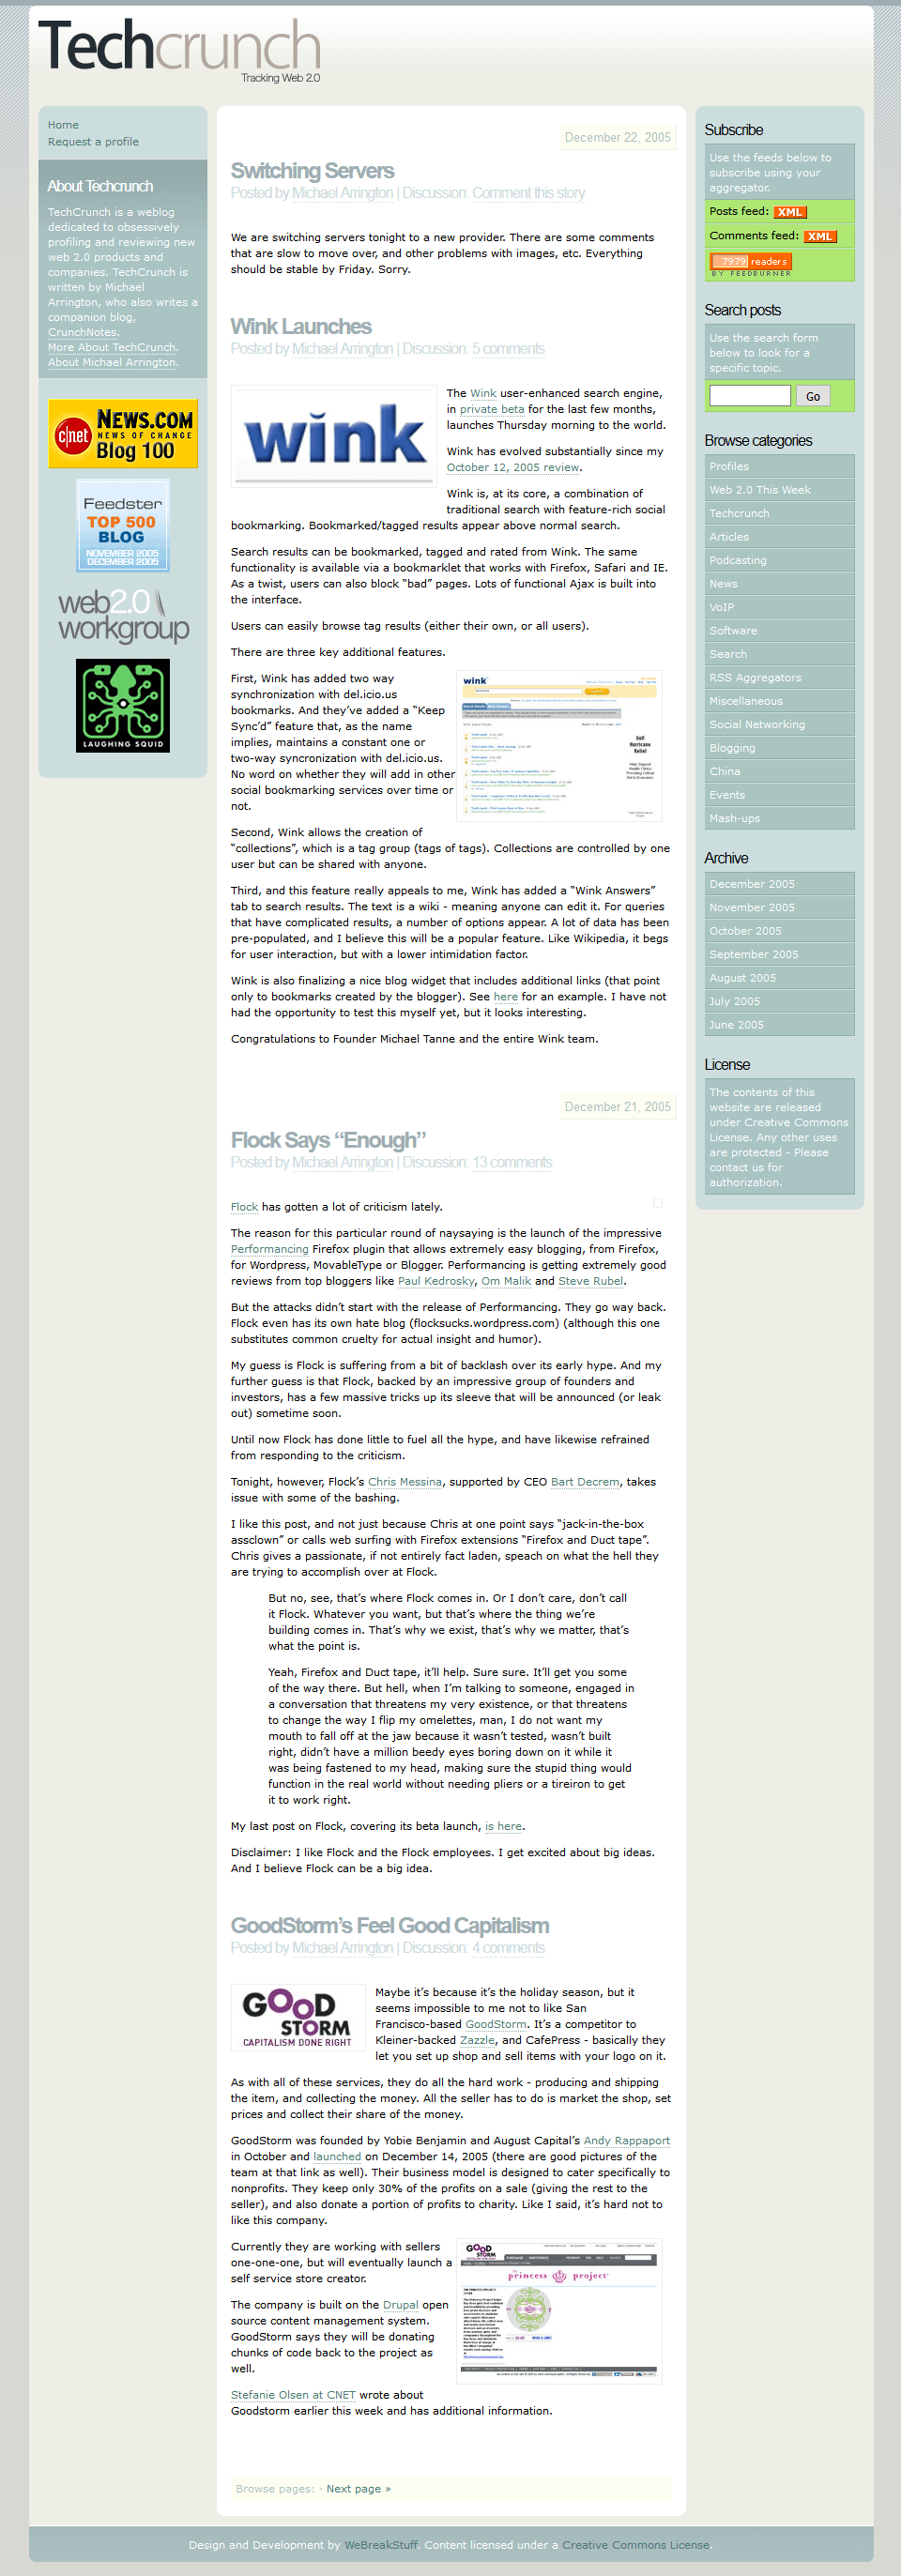 Techcrunch website in 2005